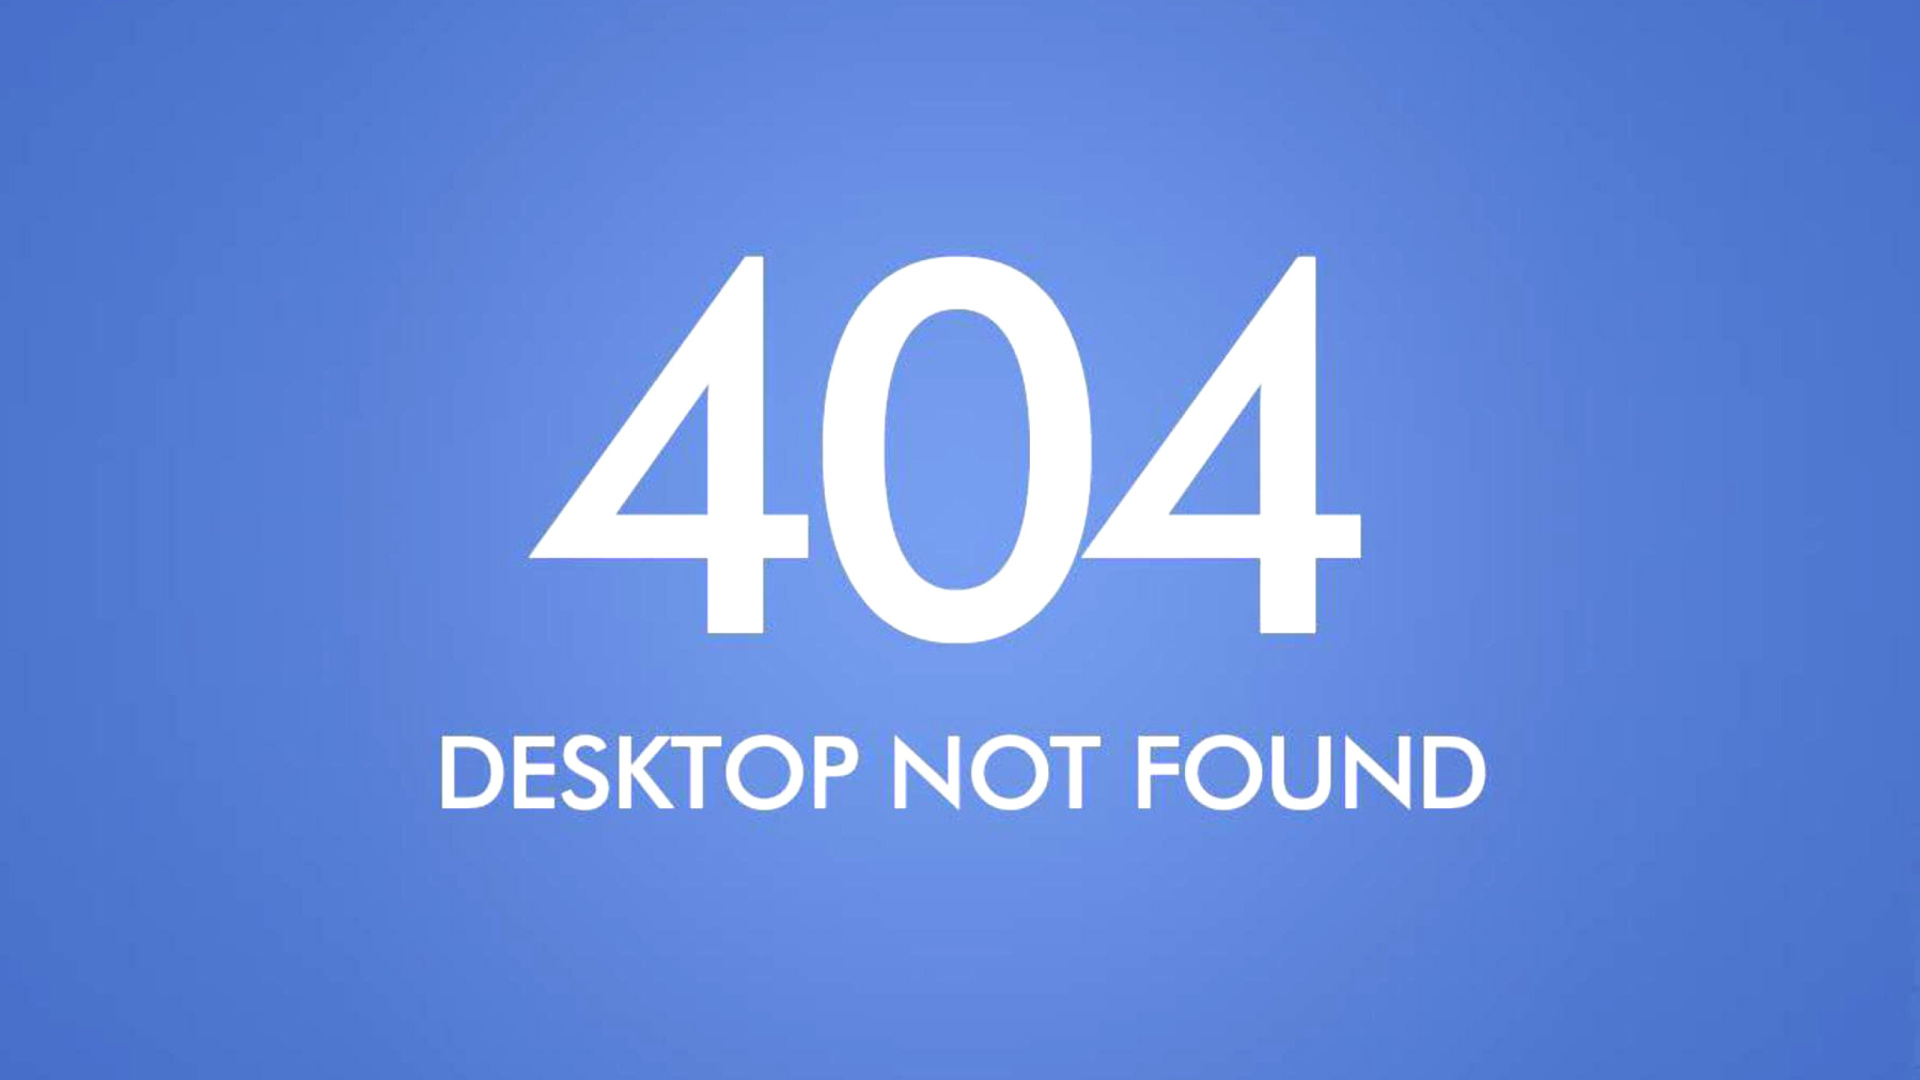 404 Desktop Not Found wallpaper 1920x1080